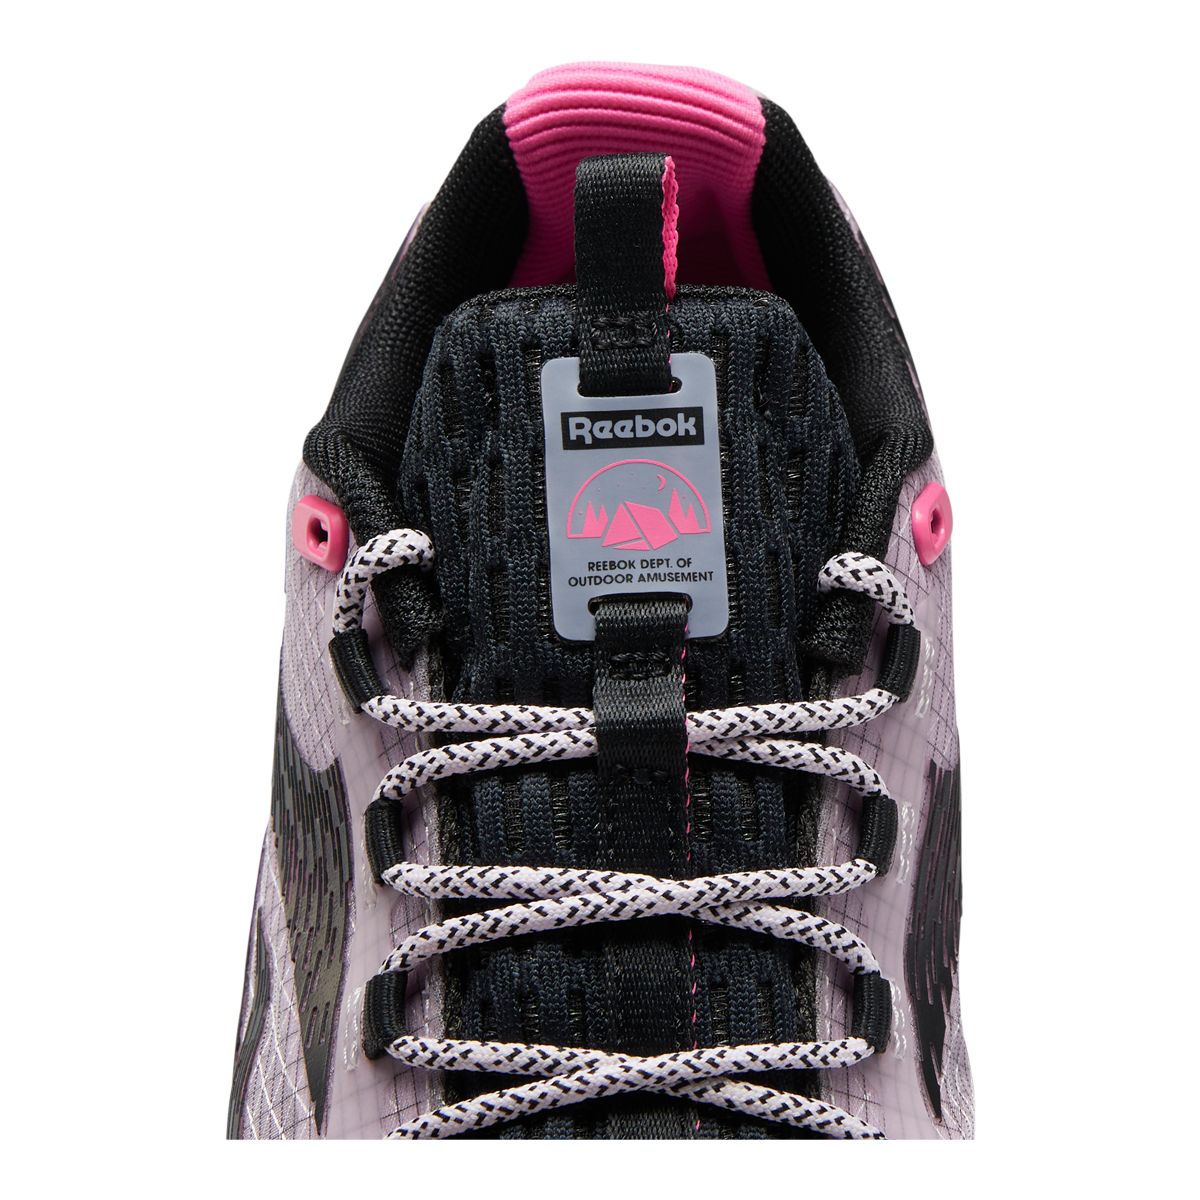 Reebok Women's DailyFit DMX 2.0 Walk Walking Shoes